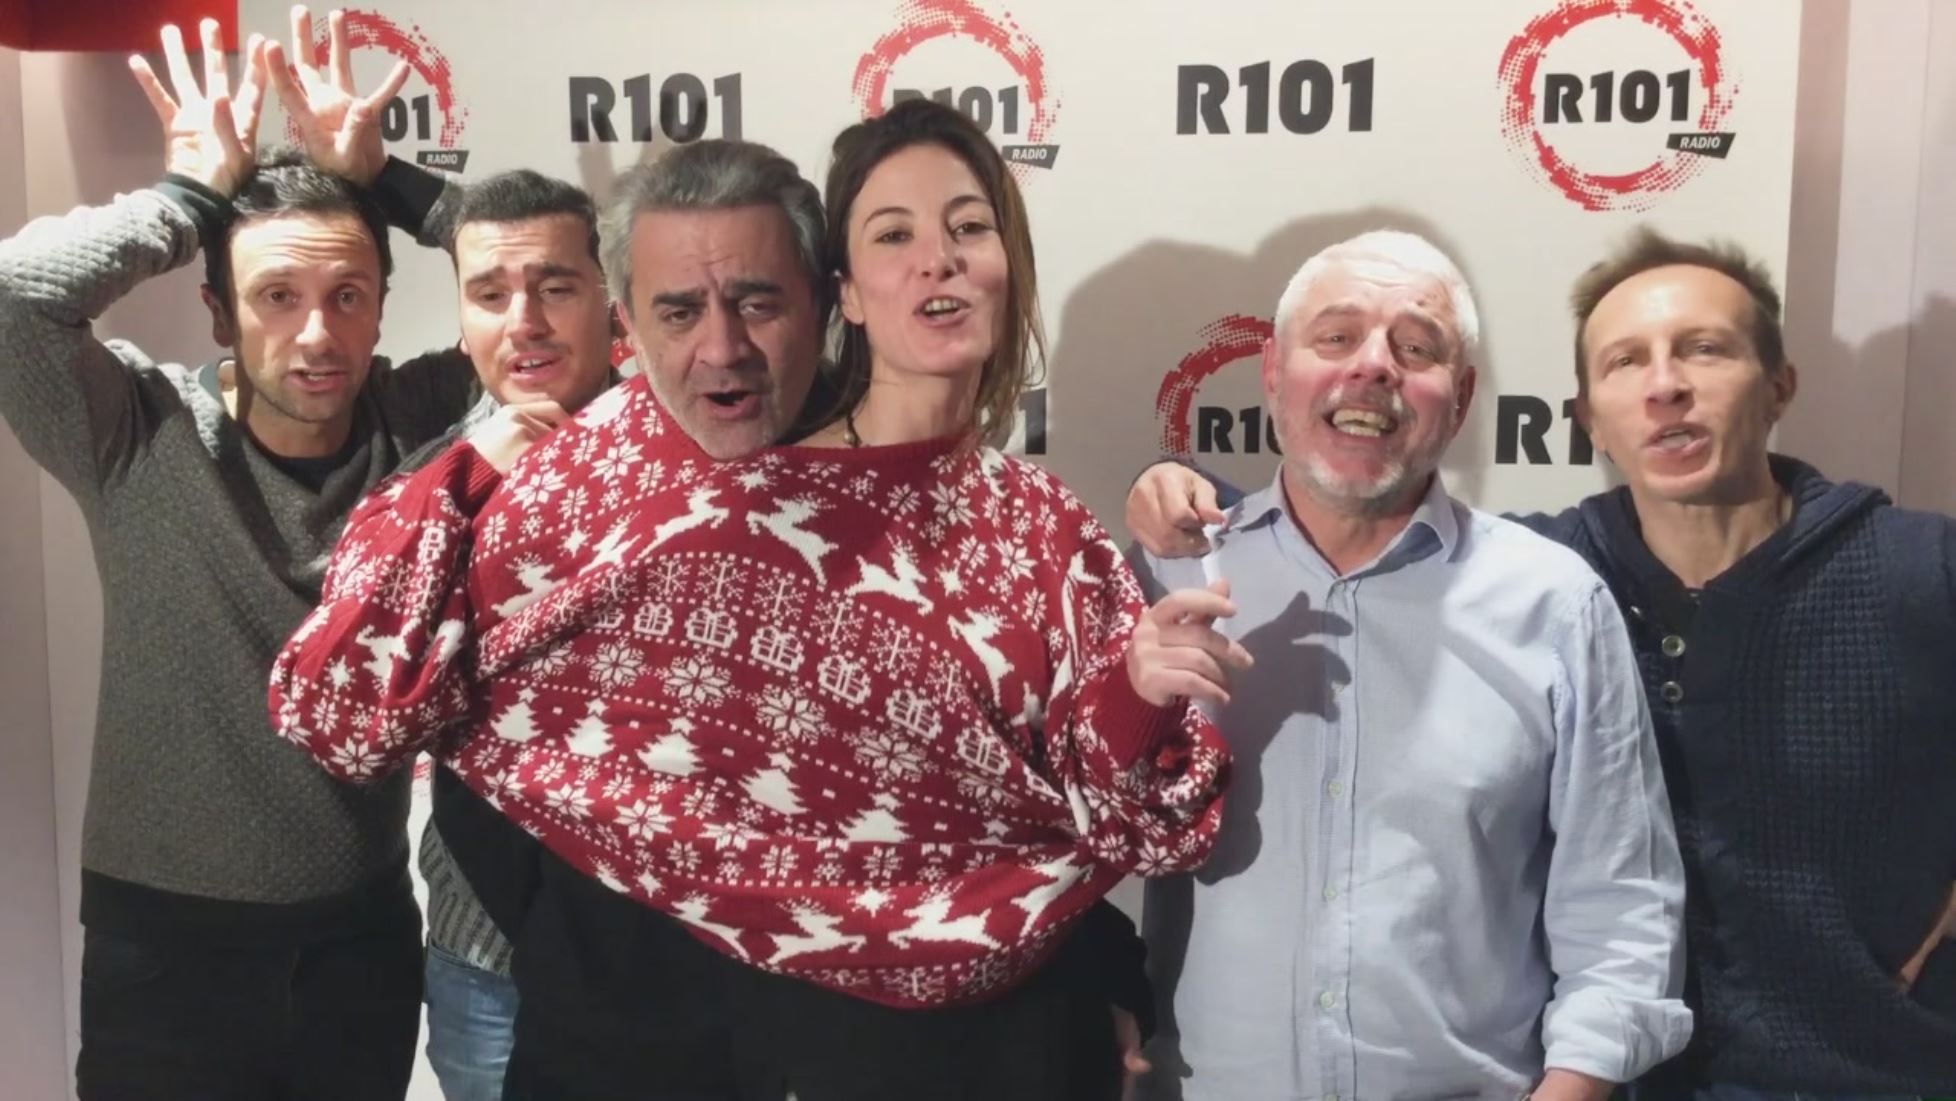 Auguri Di Natale Radio 105.Gli Auguri Di Natale De La Banda Di R101 R101 Video Mediaset Play